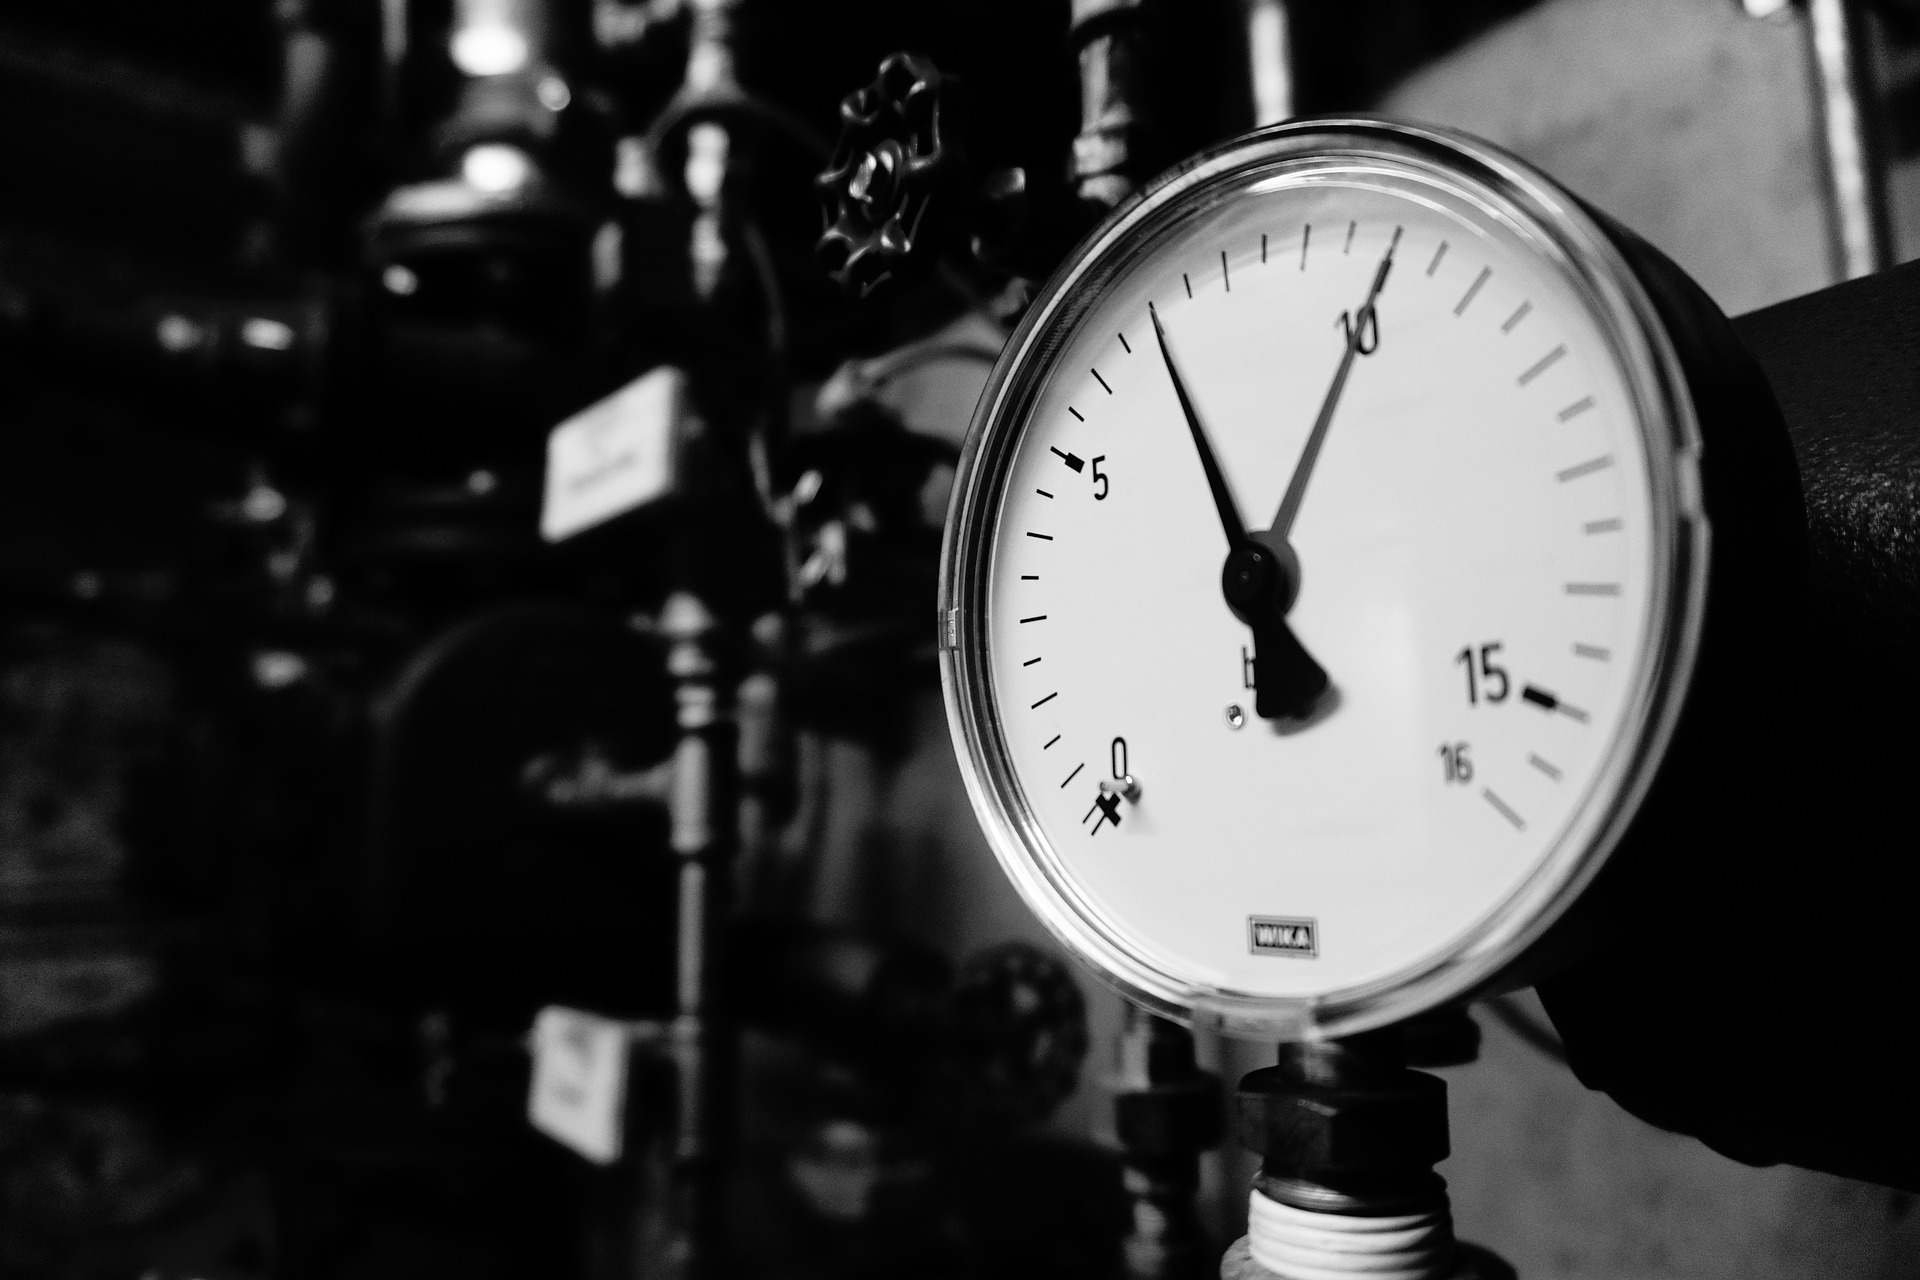 pressure-gauge-2292979_1920